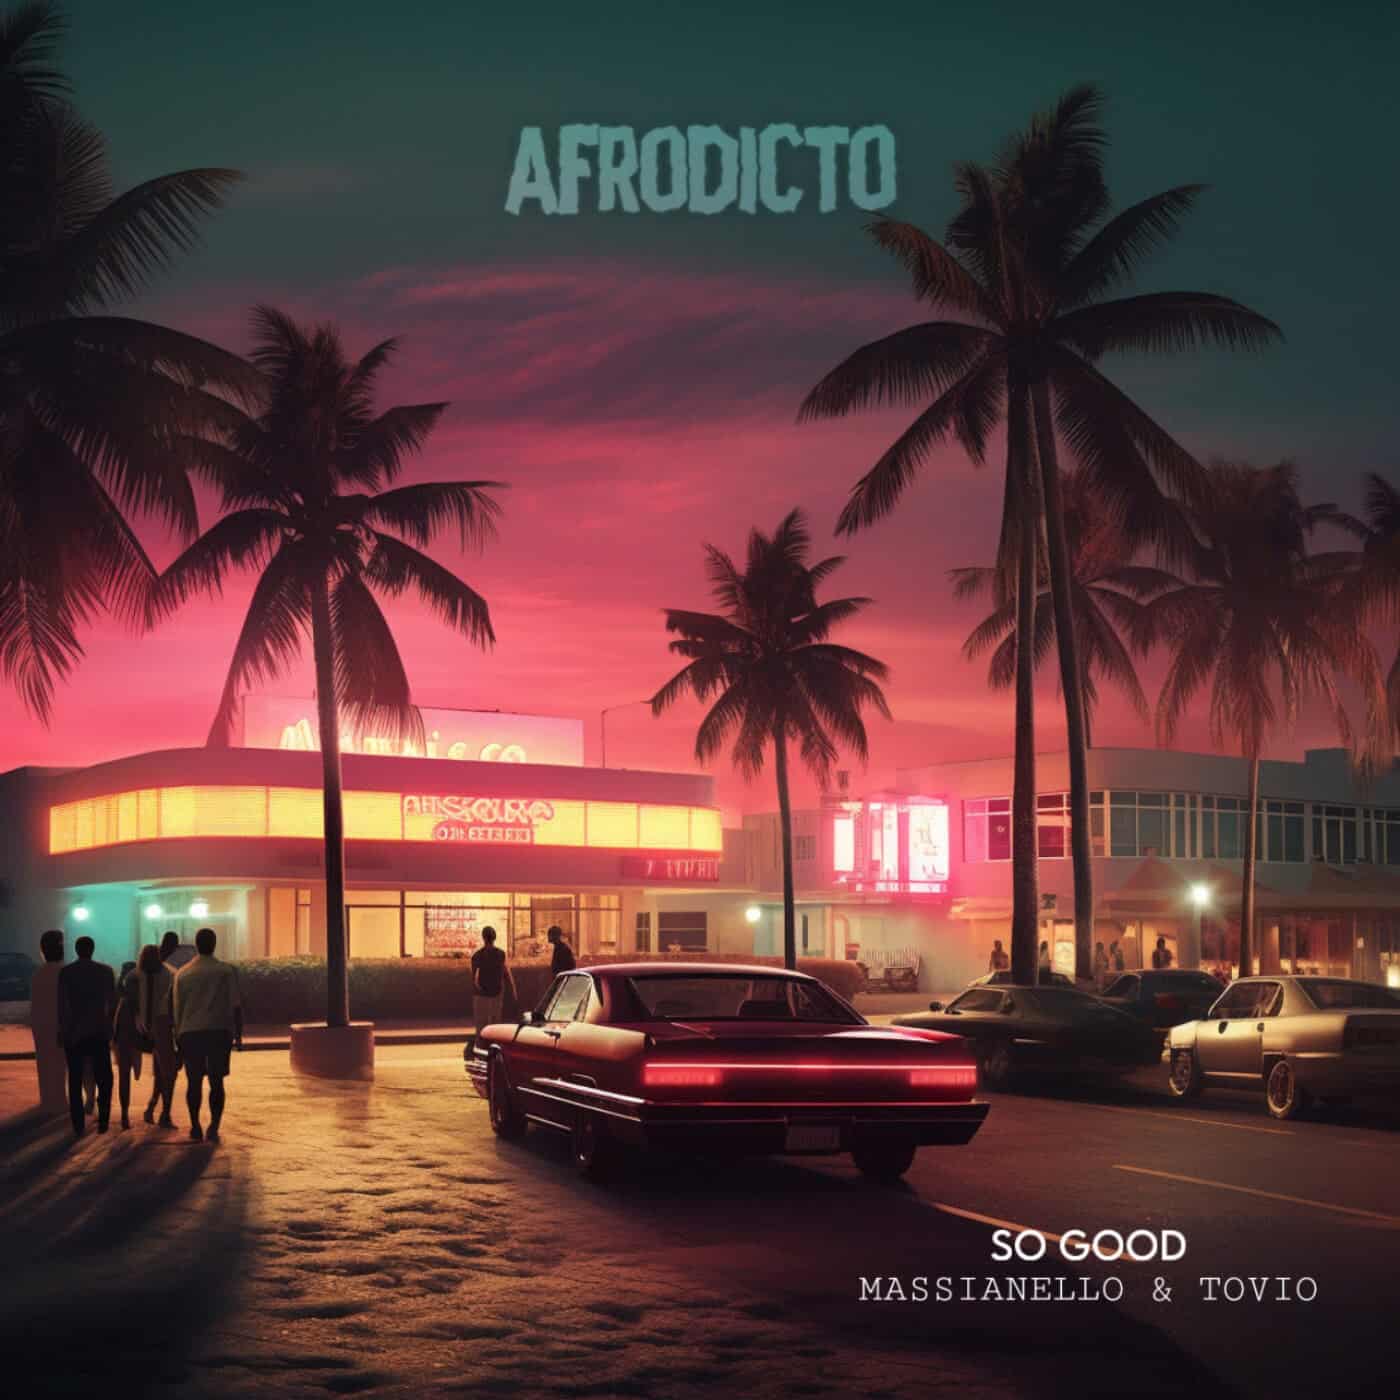 image cover: So Good by Massianello, Tovio on AFRODICTO